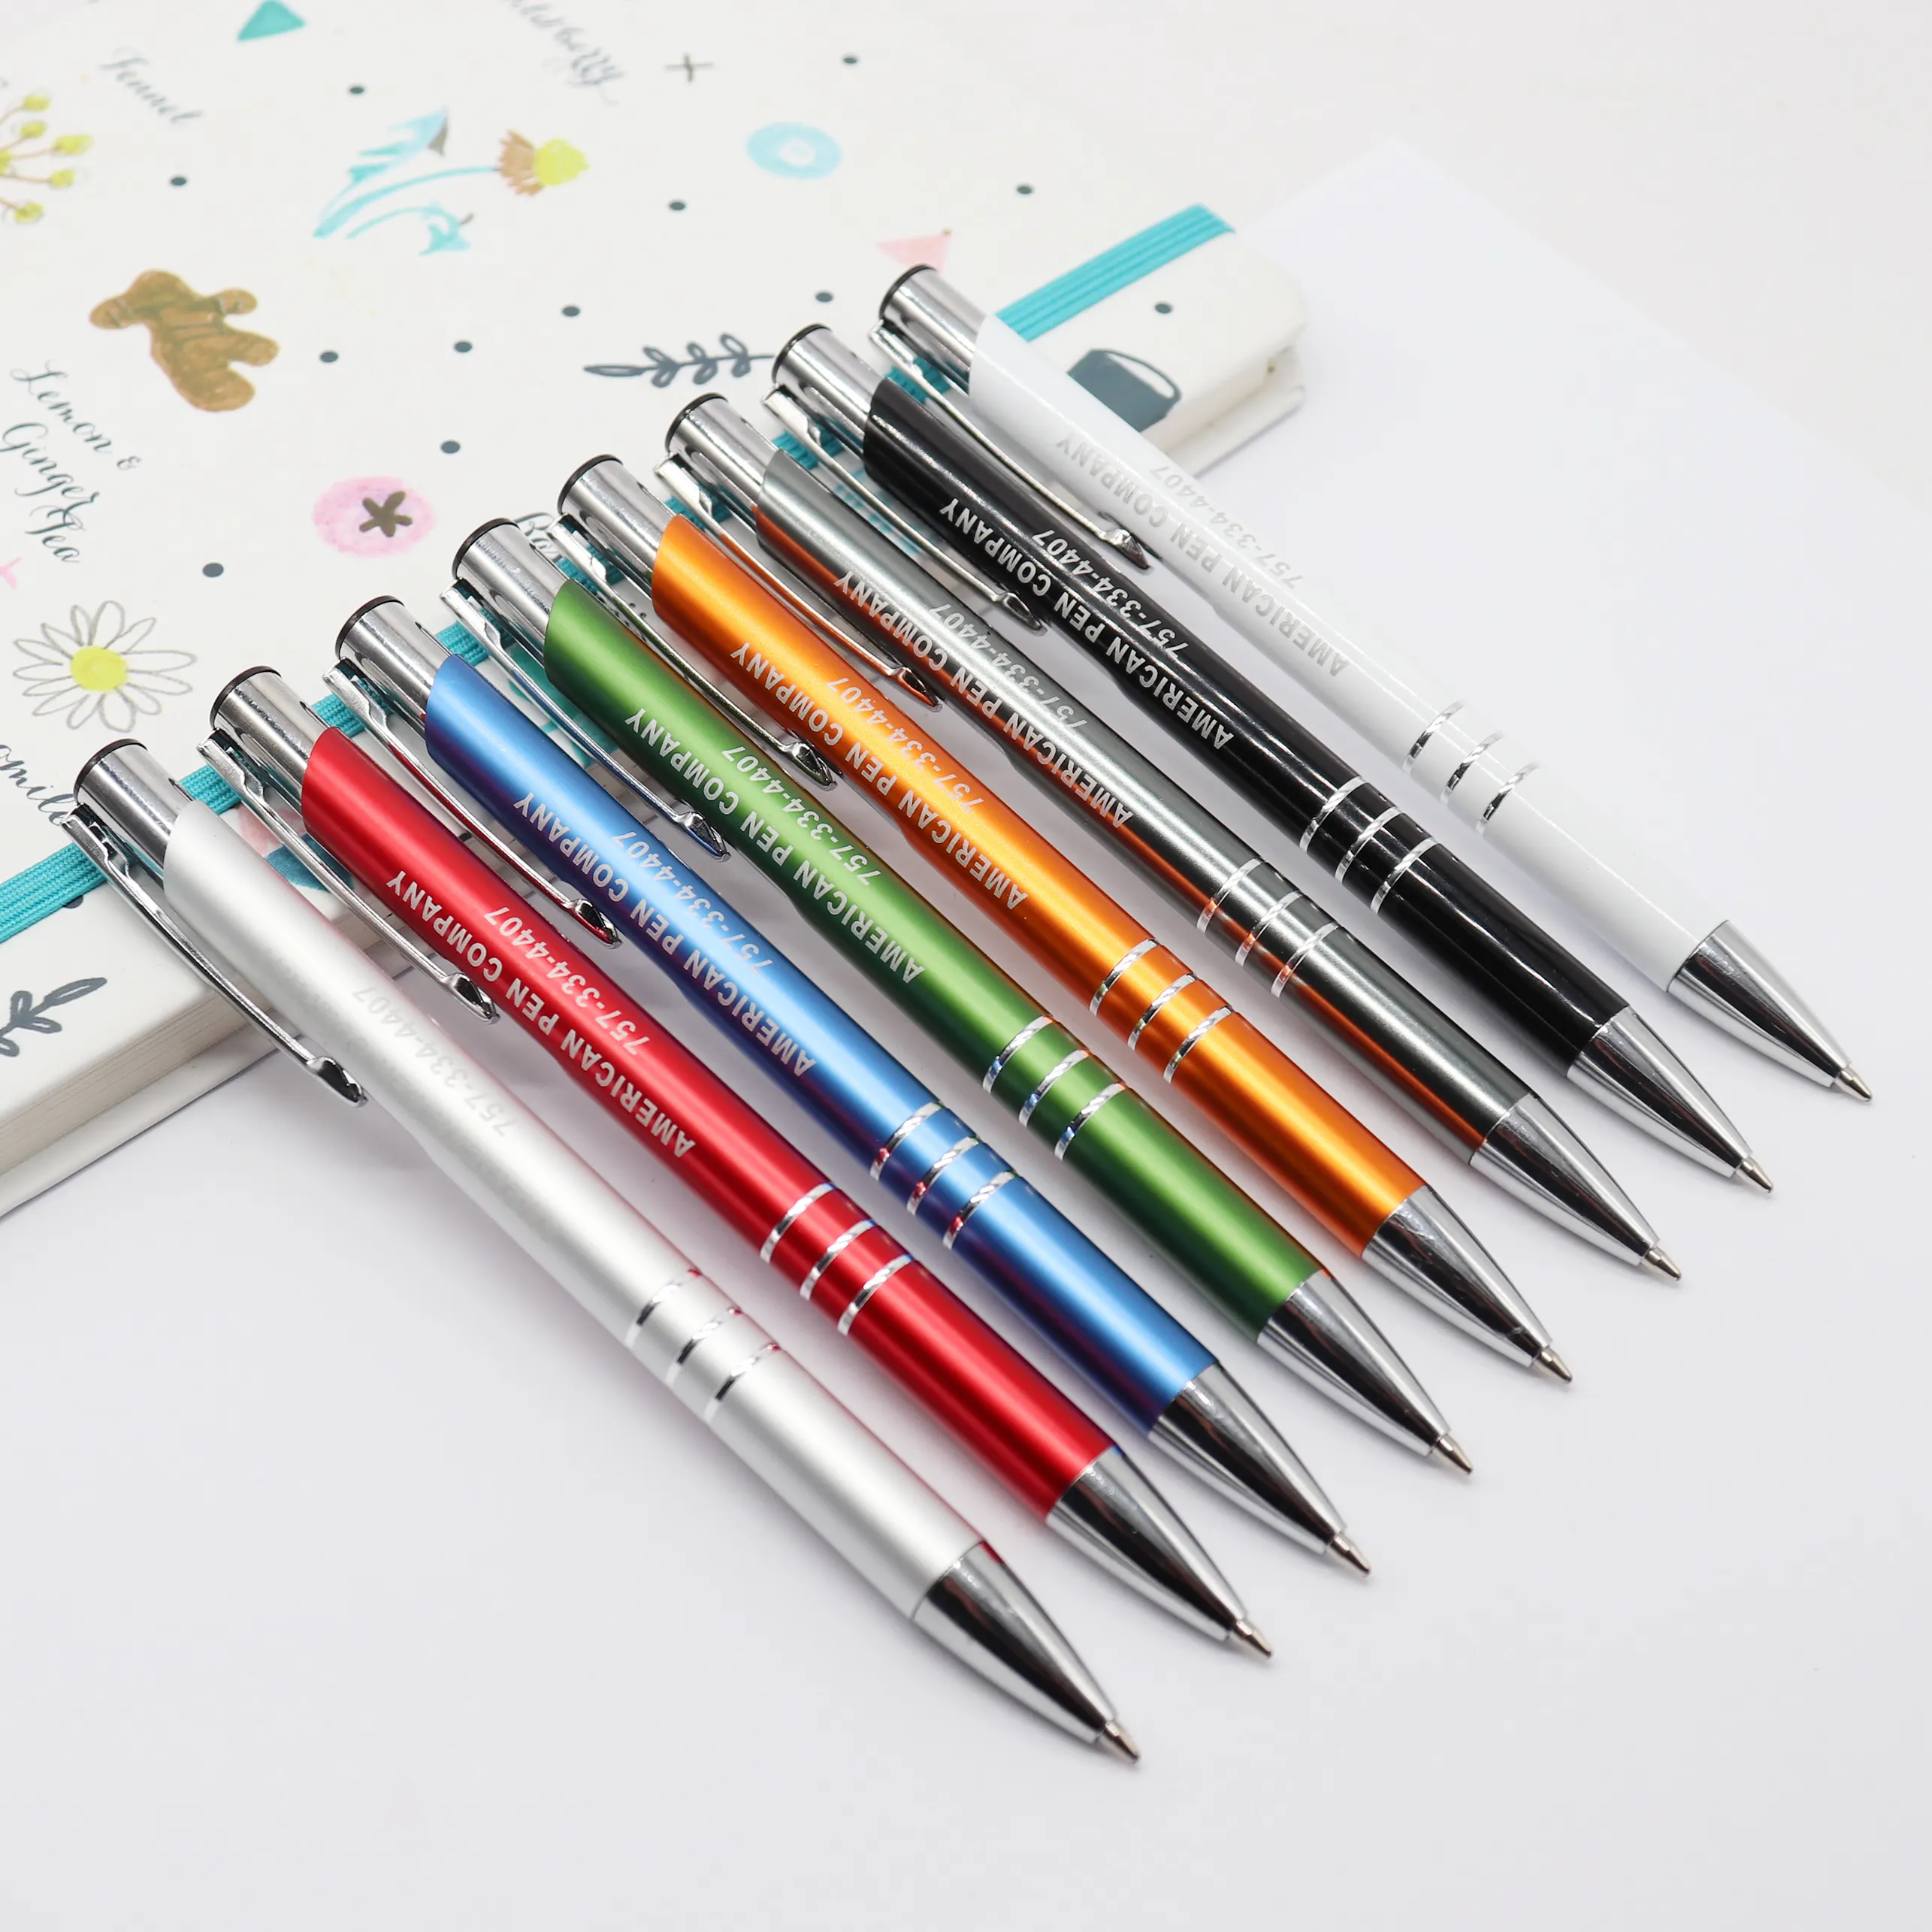 Chine fabrication professionnelle stylo à bille promotionnel métallique de luxe stylo à bille en métal coloré stylo personnalisé avec stylo logo